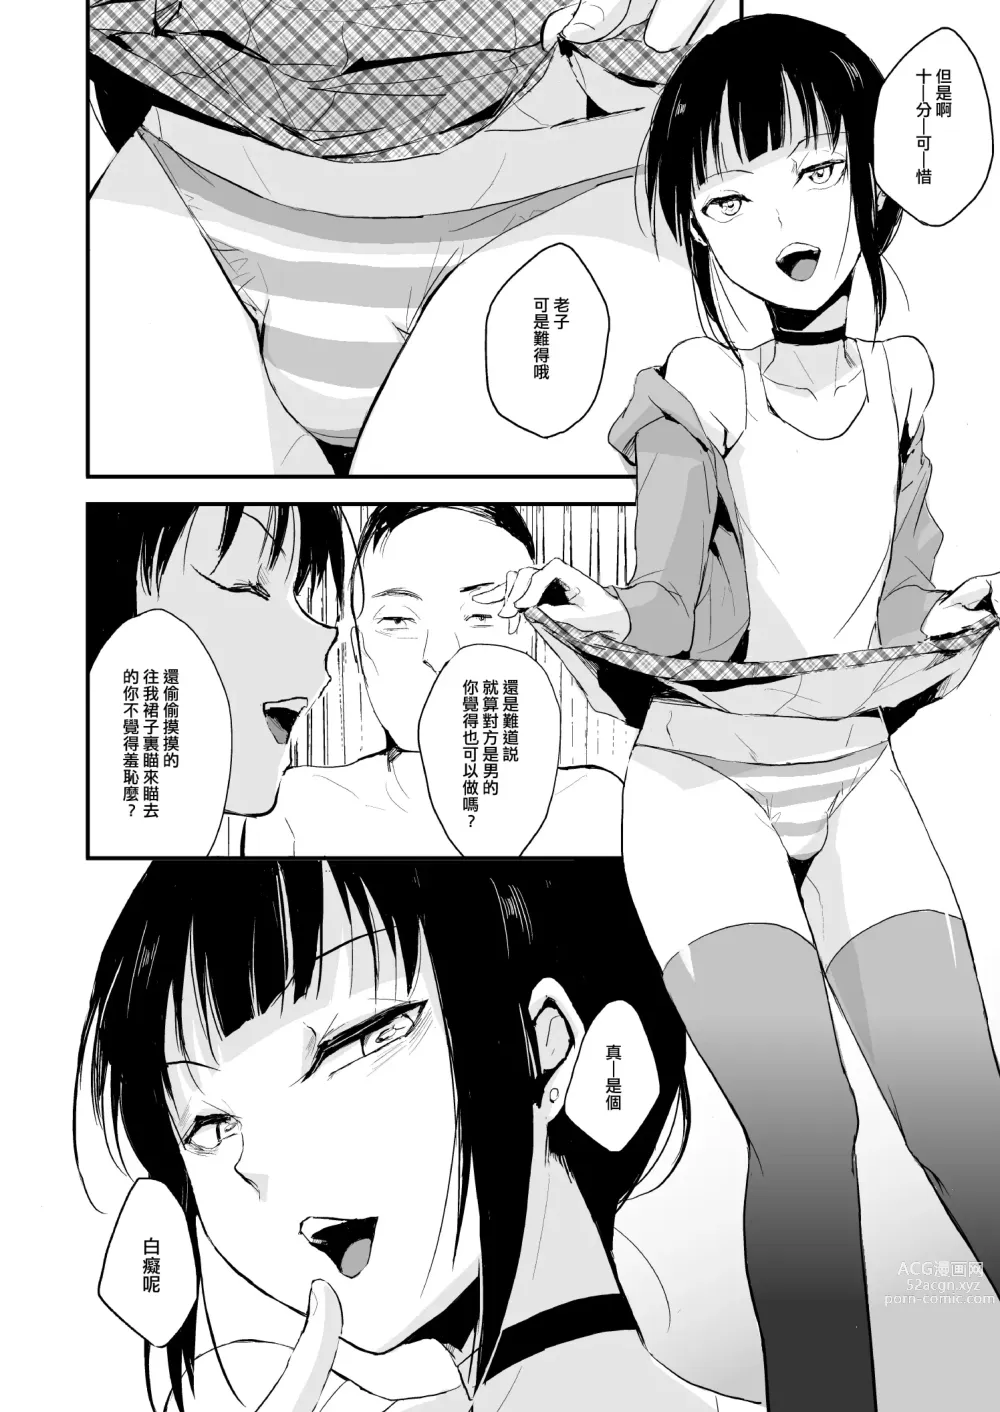 Page 8 of manga ダブルトラップ